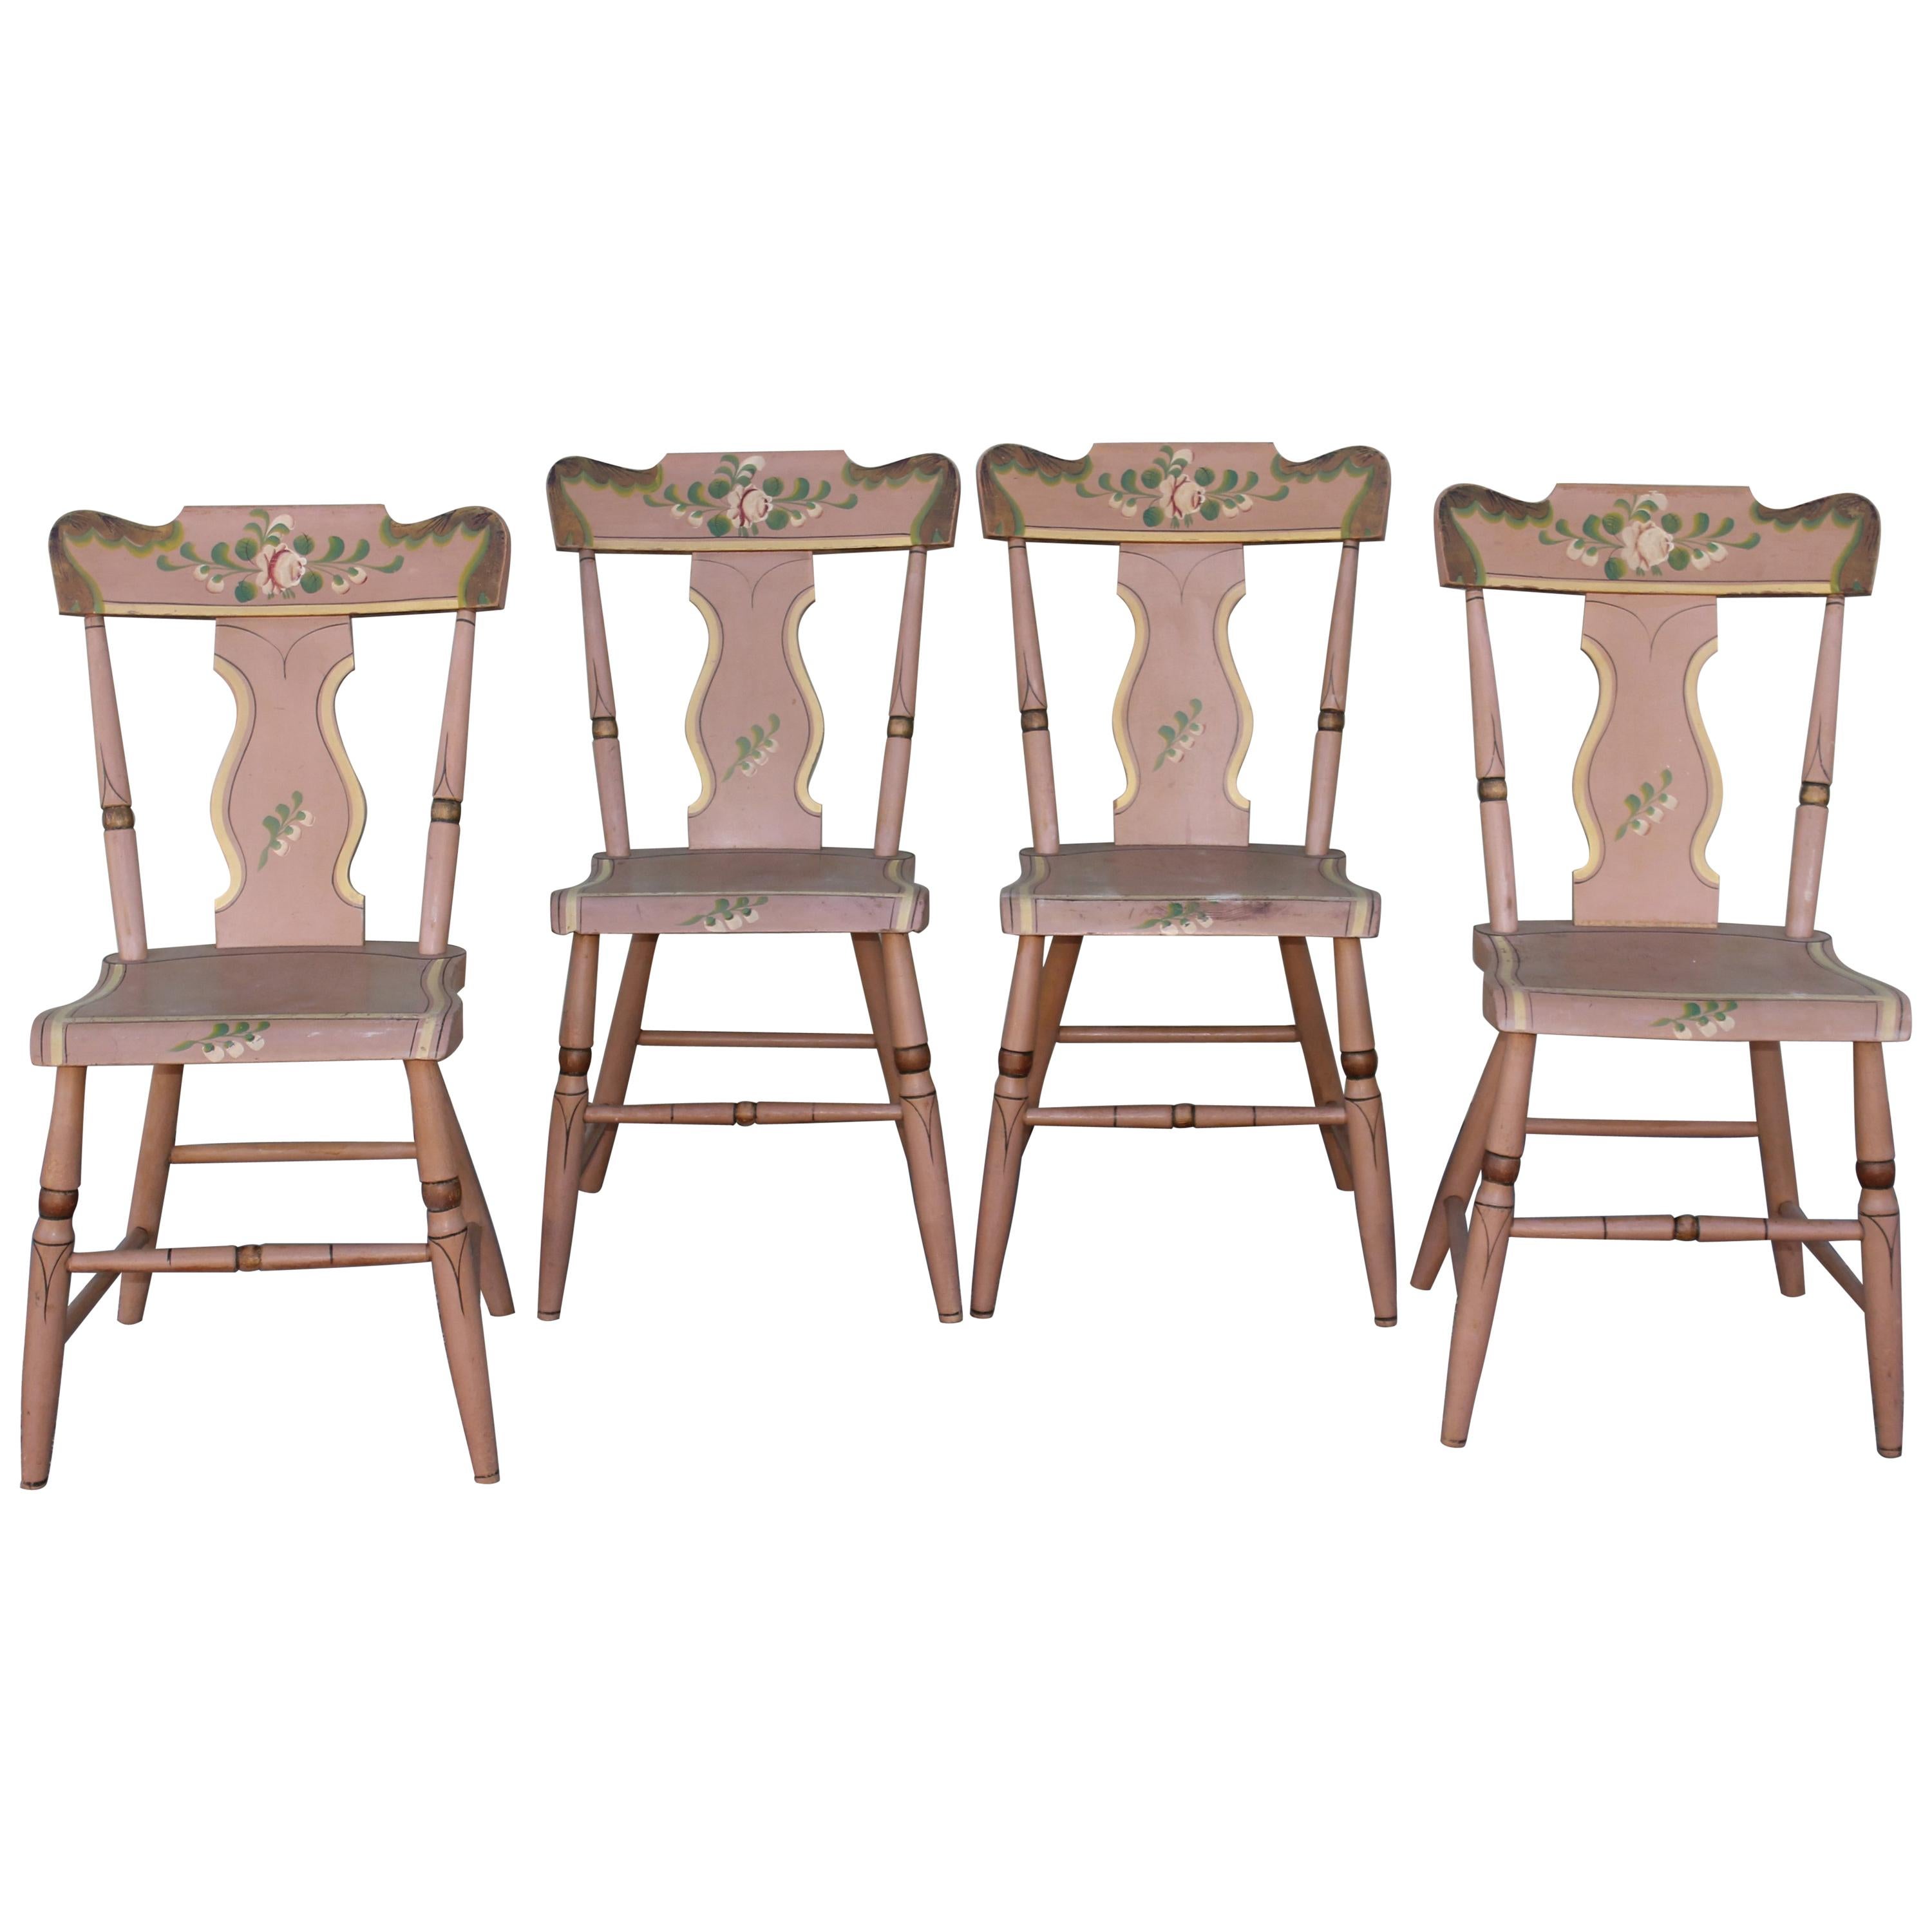 Ensemble de quatre chaises à bascule en planches de Pennsylvanie peintes d'origine datant du 19ème siècle